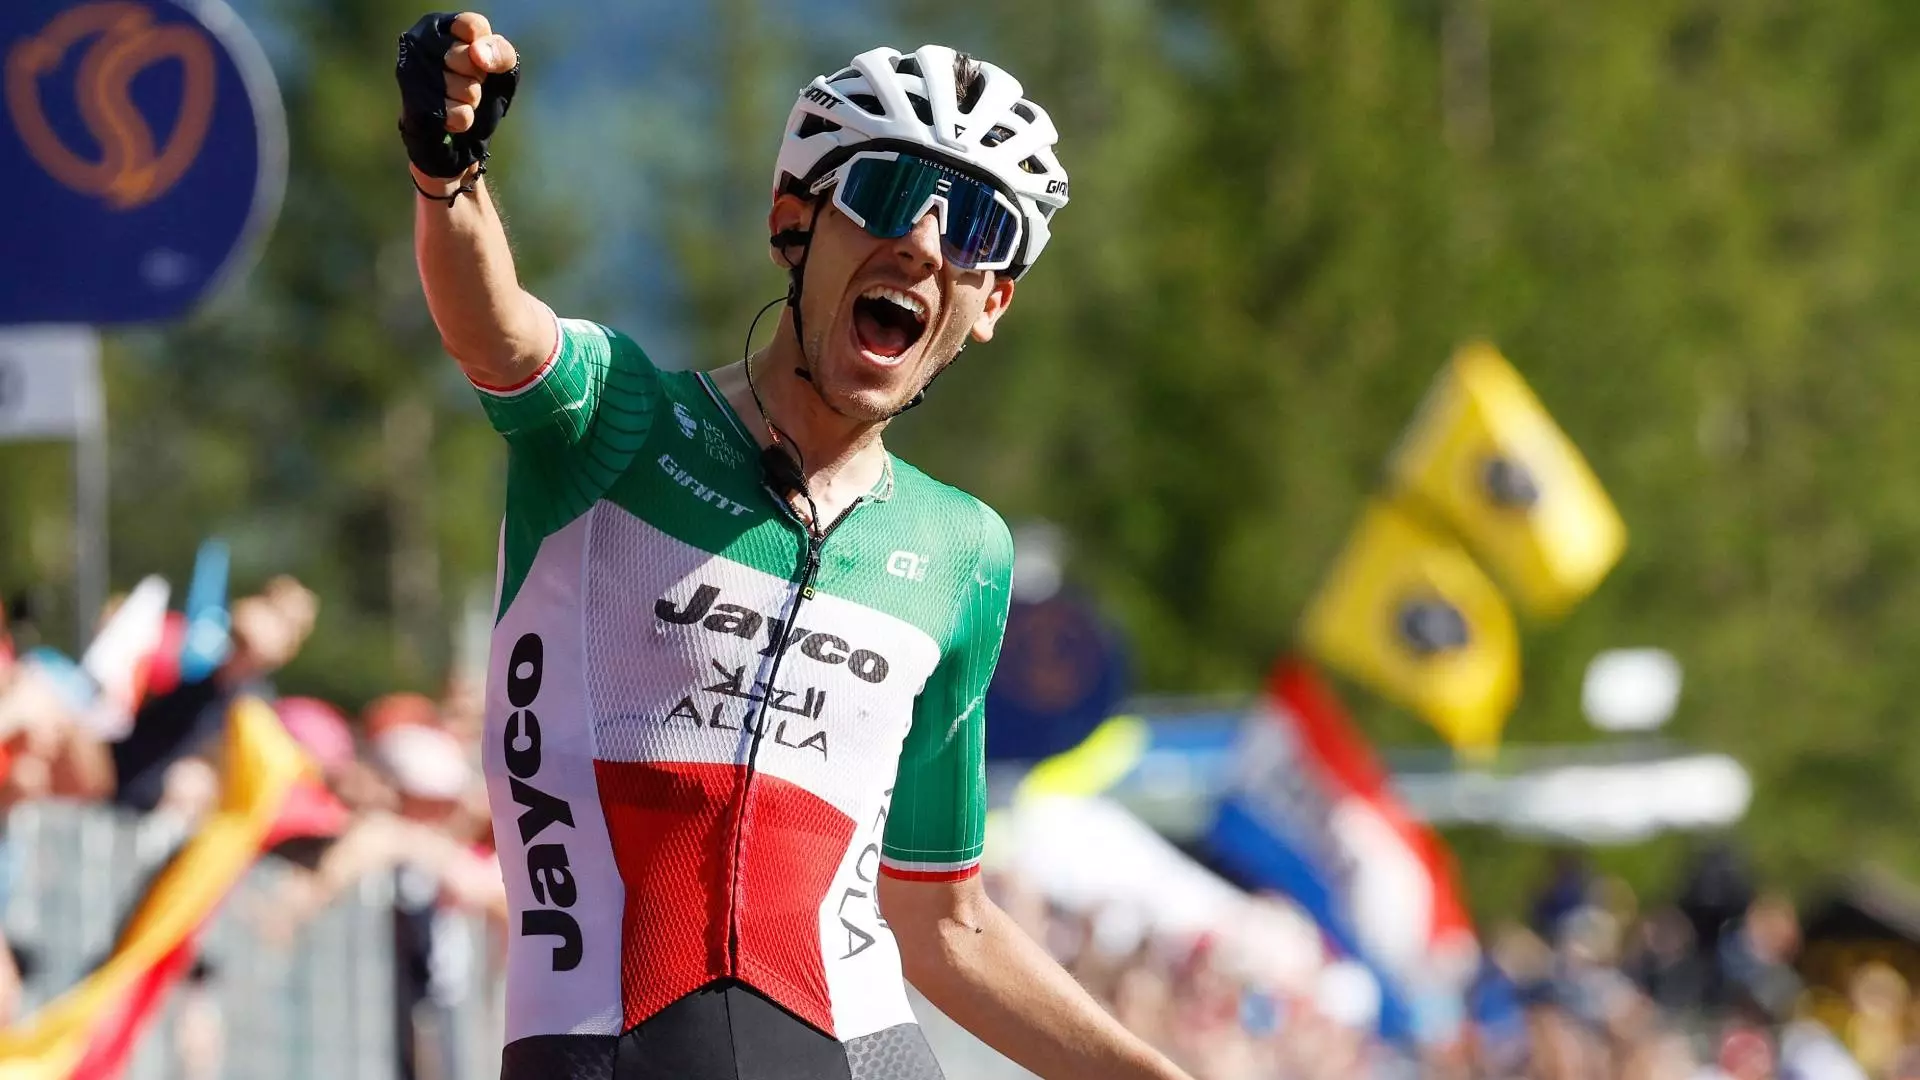 Giro d’Italia: un super Zana trionfa a Val di Zoldo. Thomas ancora in rosa